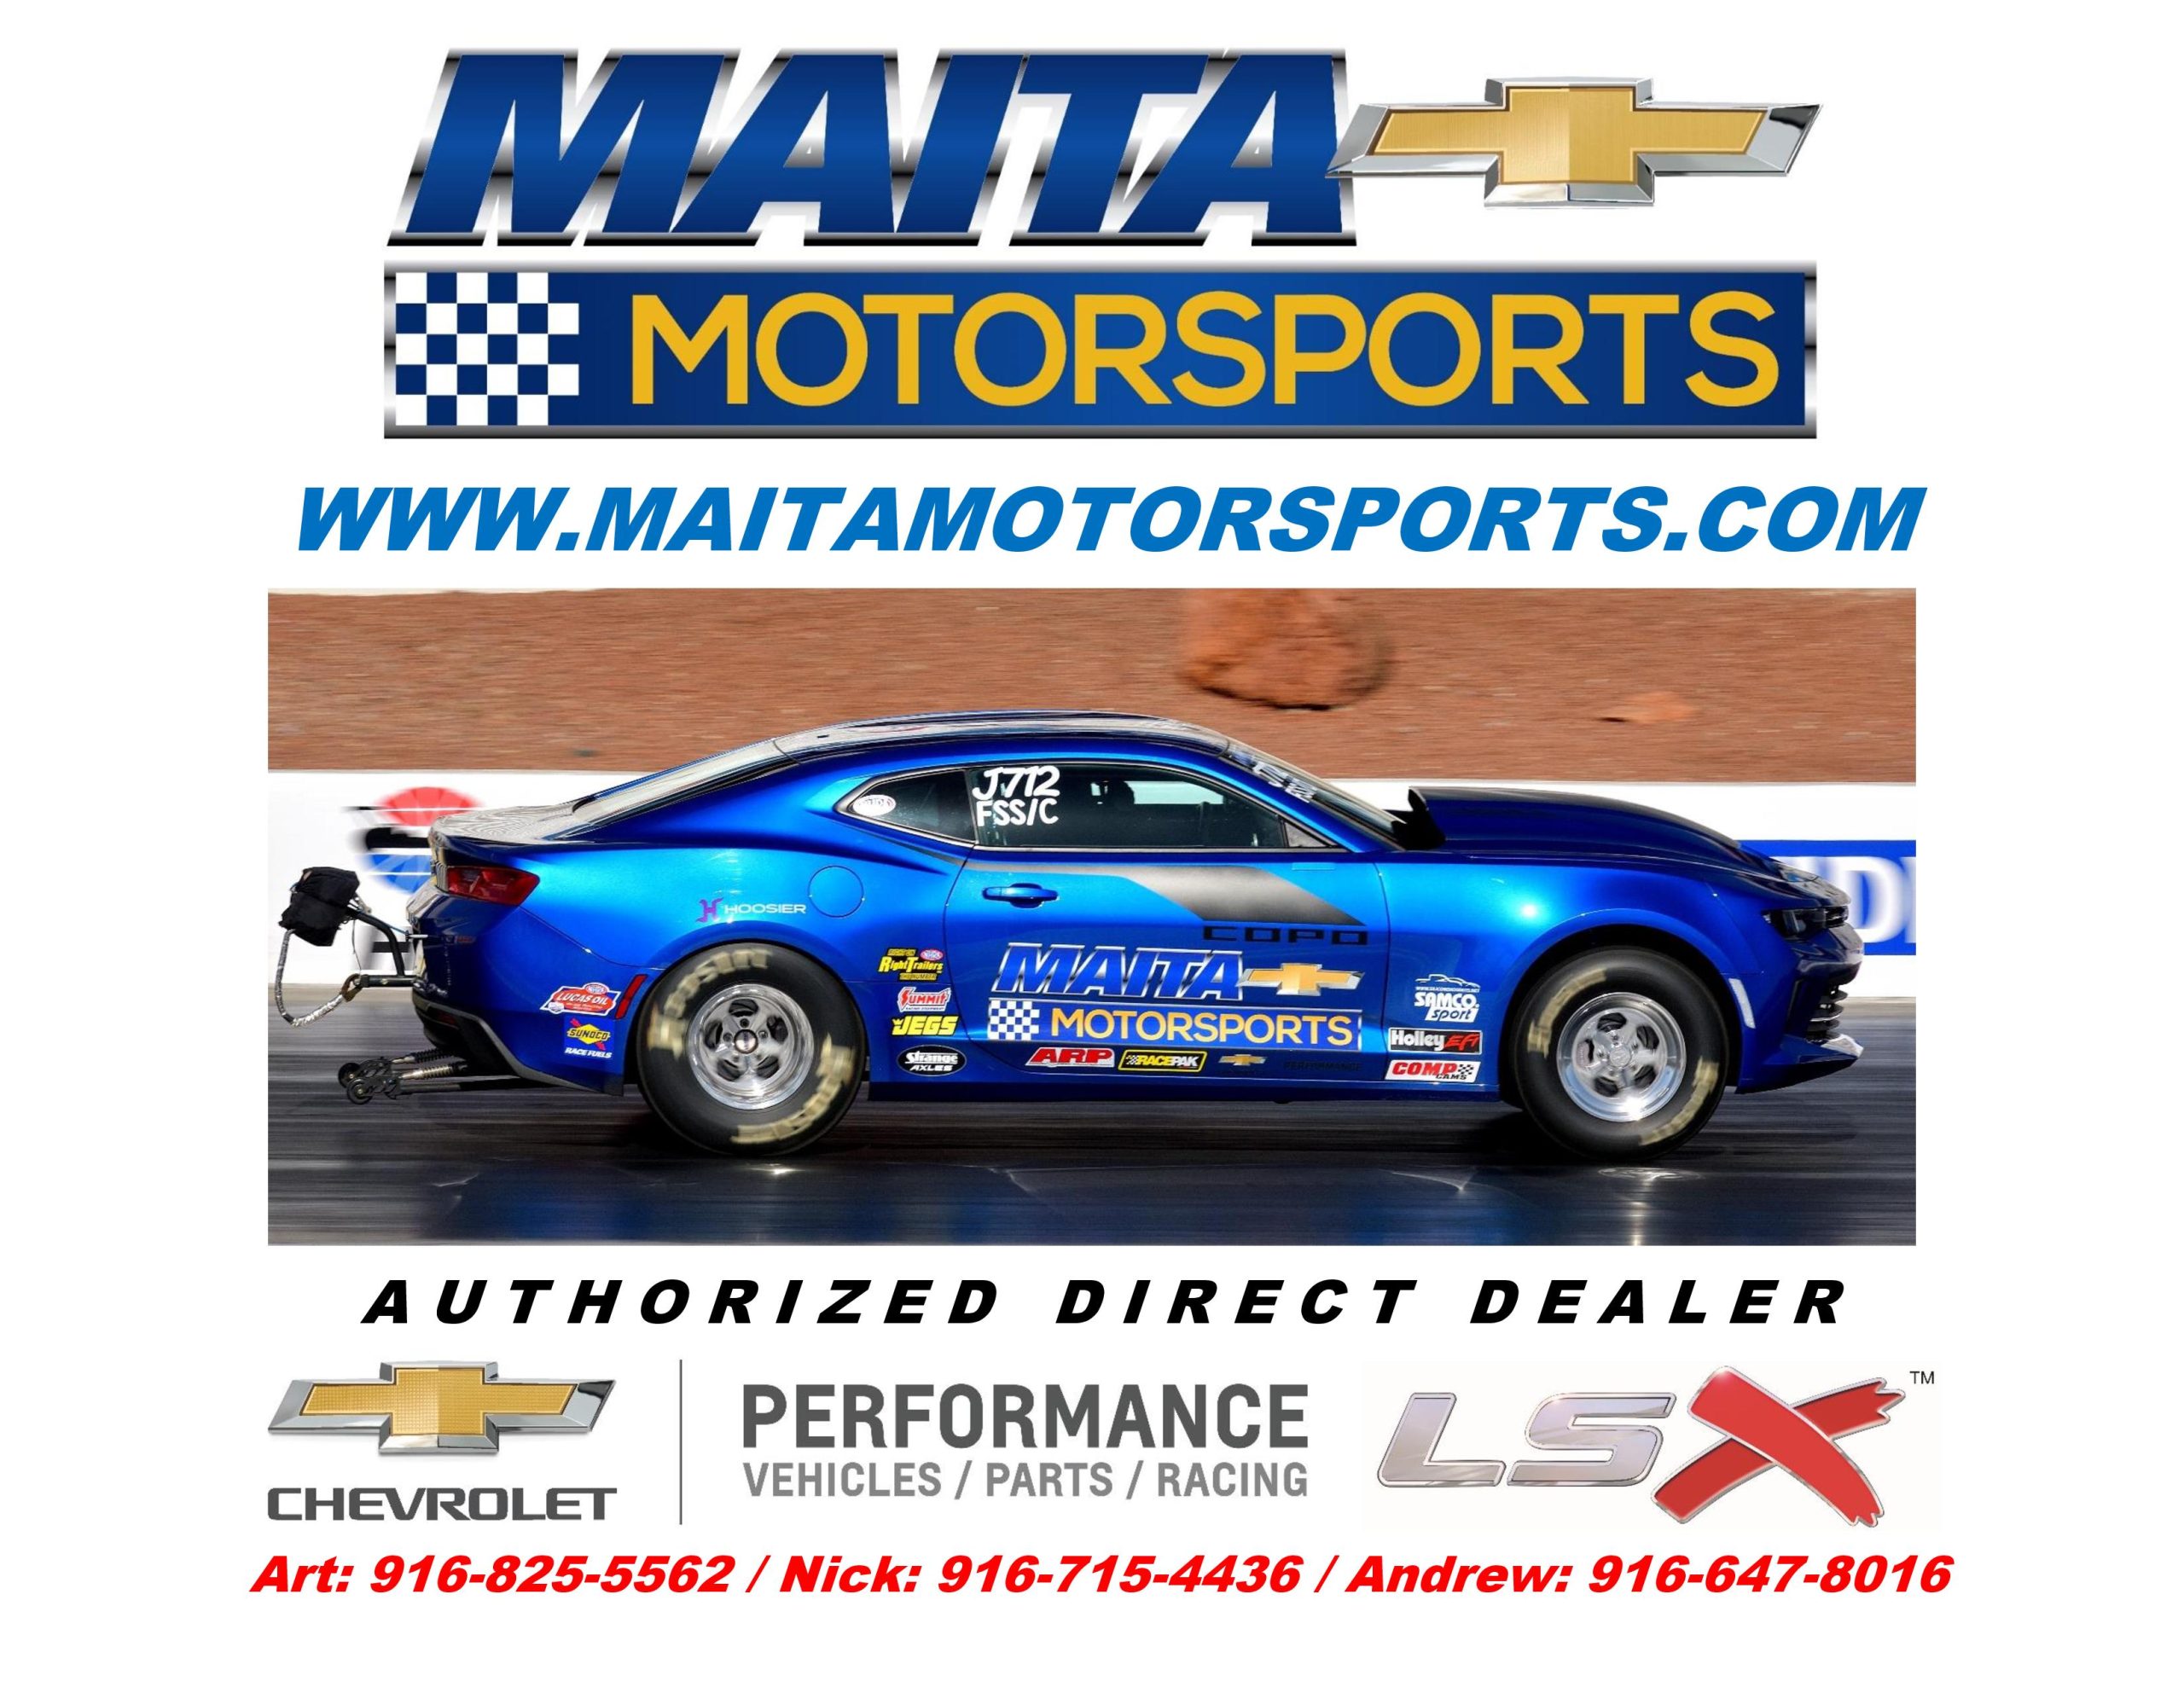 MaitaMotorsports.com